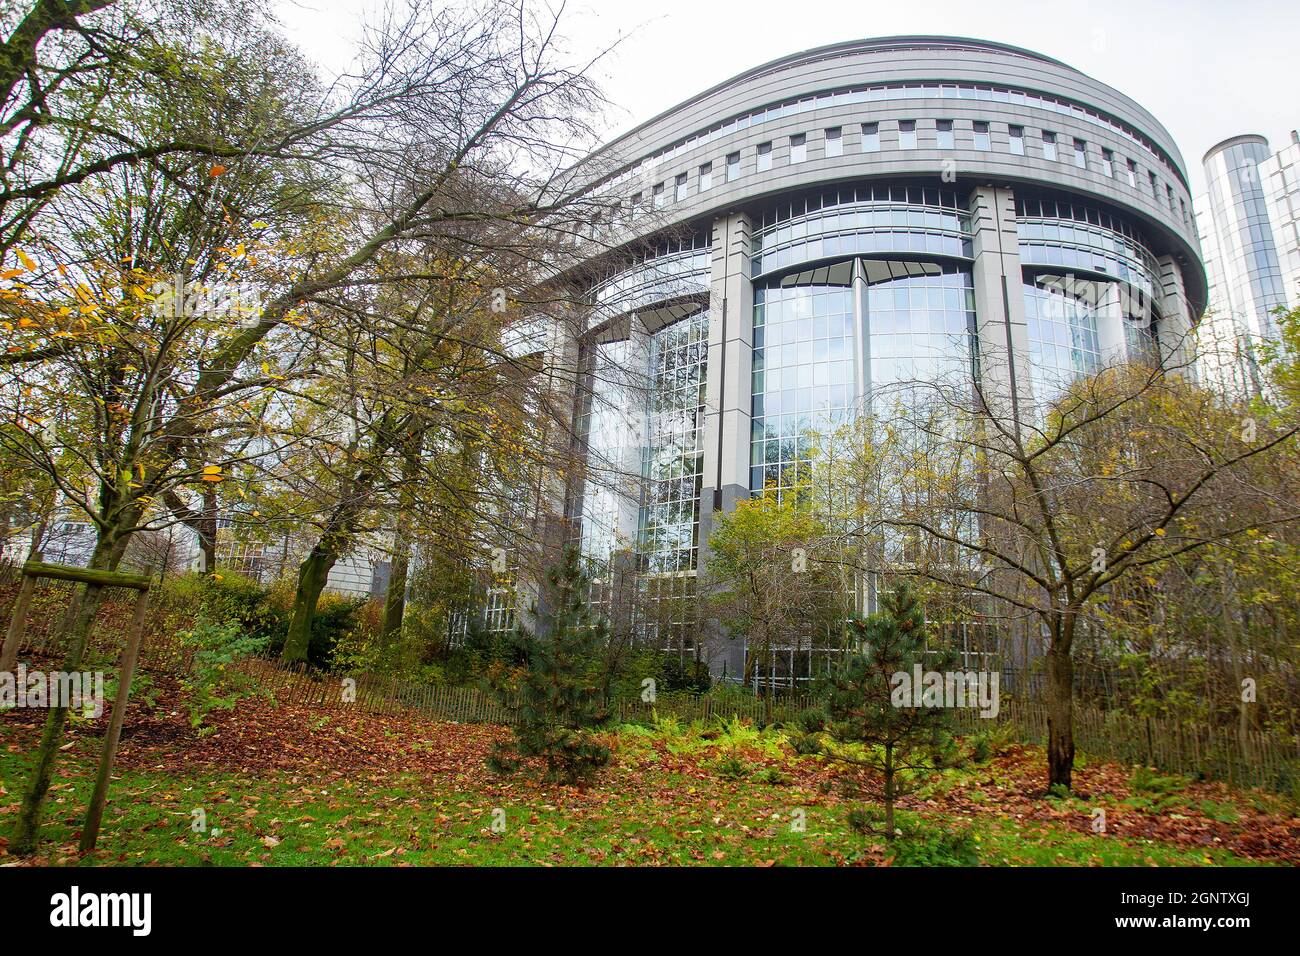 11-27-2015 Brüssel. EU-Gebäude und ein hübscher Park in der Nähe. Guten Herbsttag. Stockfoto